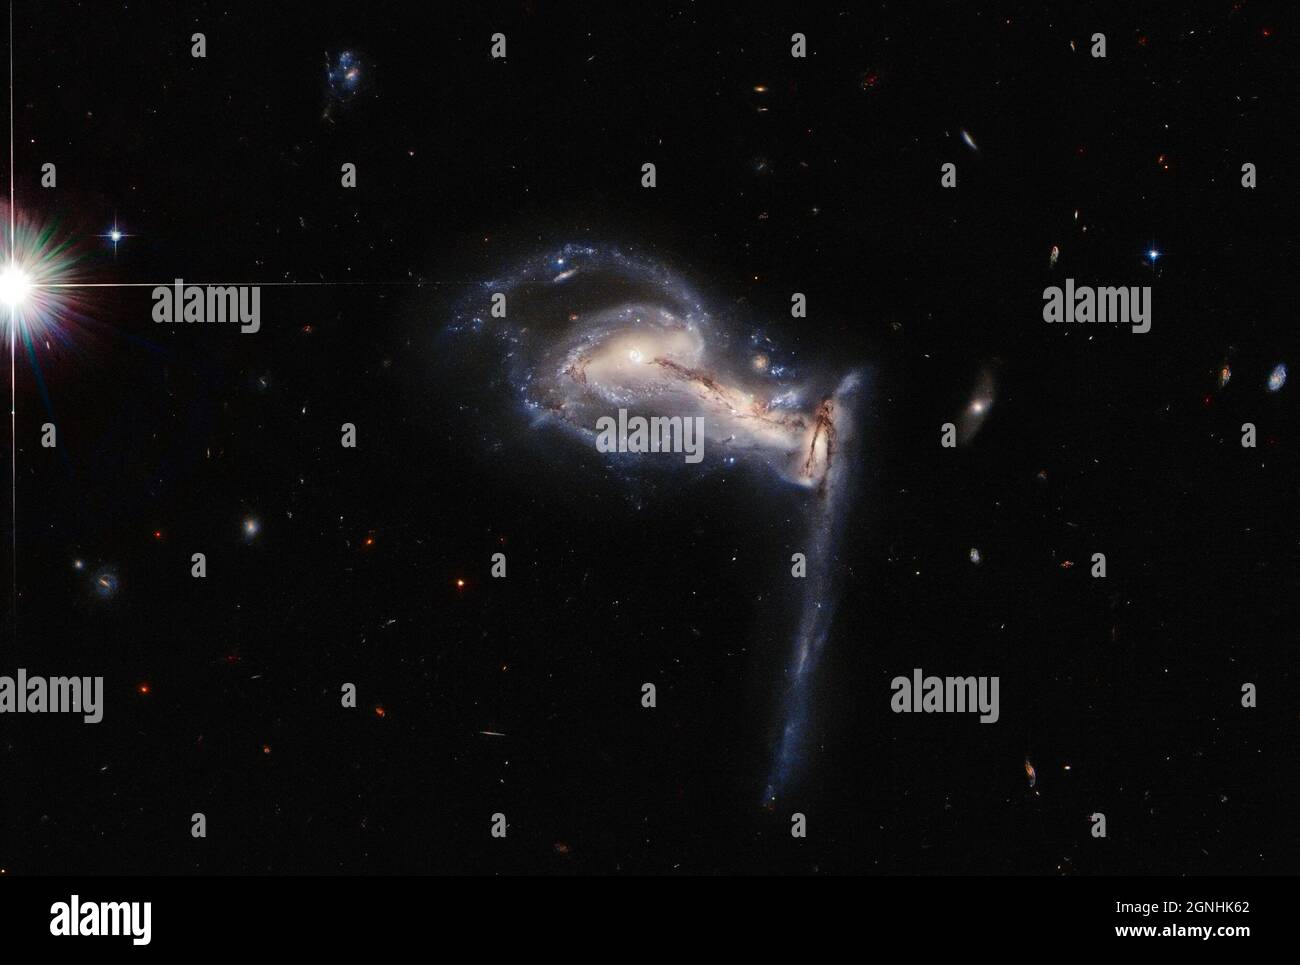 Eine Dreifachgruppe interagierender Galaxien. Dieses System ist als Arp 195 bekannt und wird im Sternbild Lynx gefunden. Bildquelle NASA/ESA Hubble Space Telescope Stockfoto